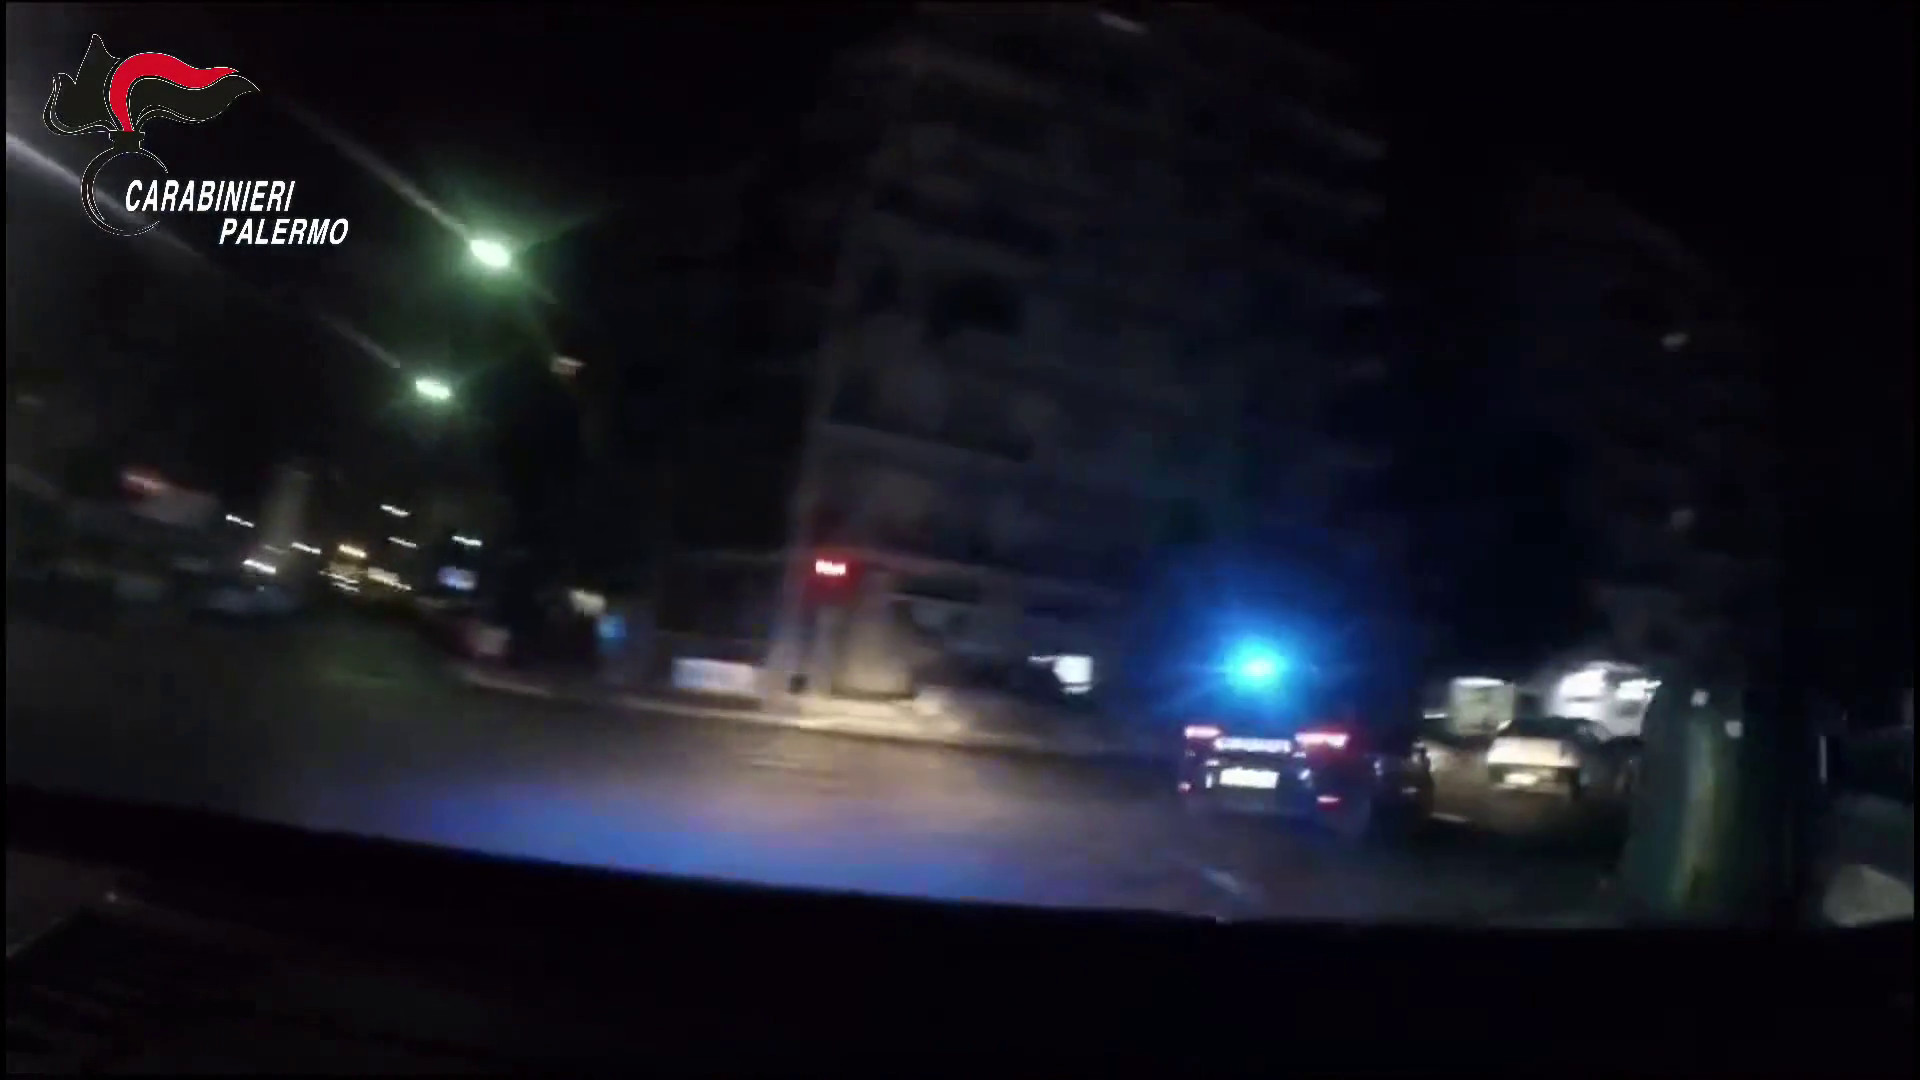 <div>Arrestati a Palermo dopo un furto, le immagini dell'inseguimento</div>